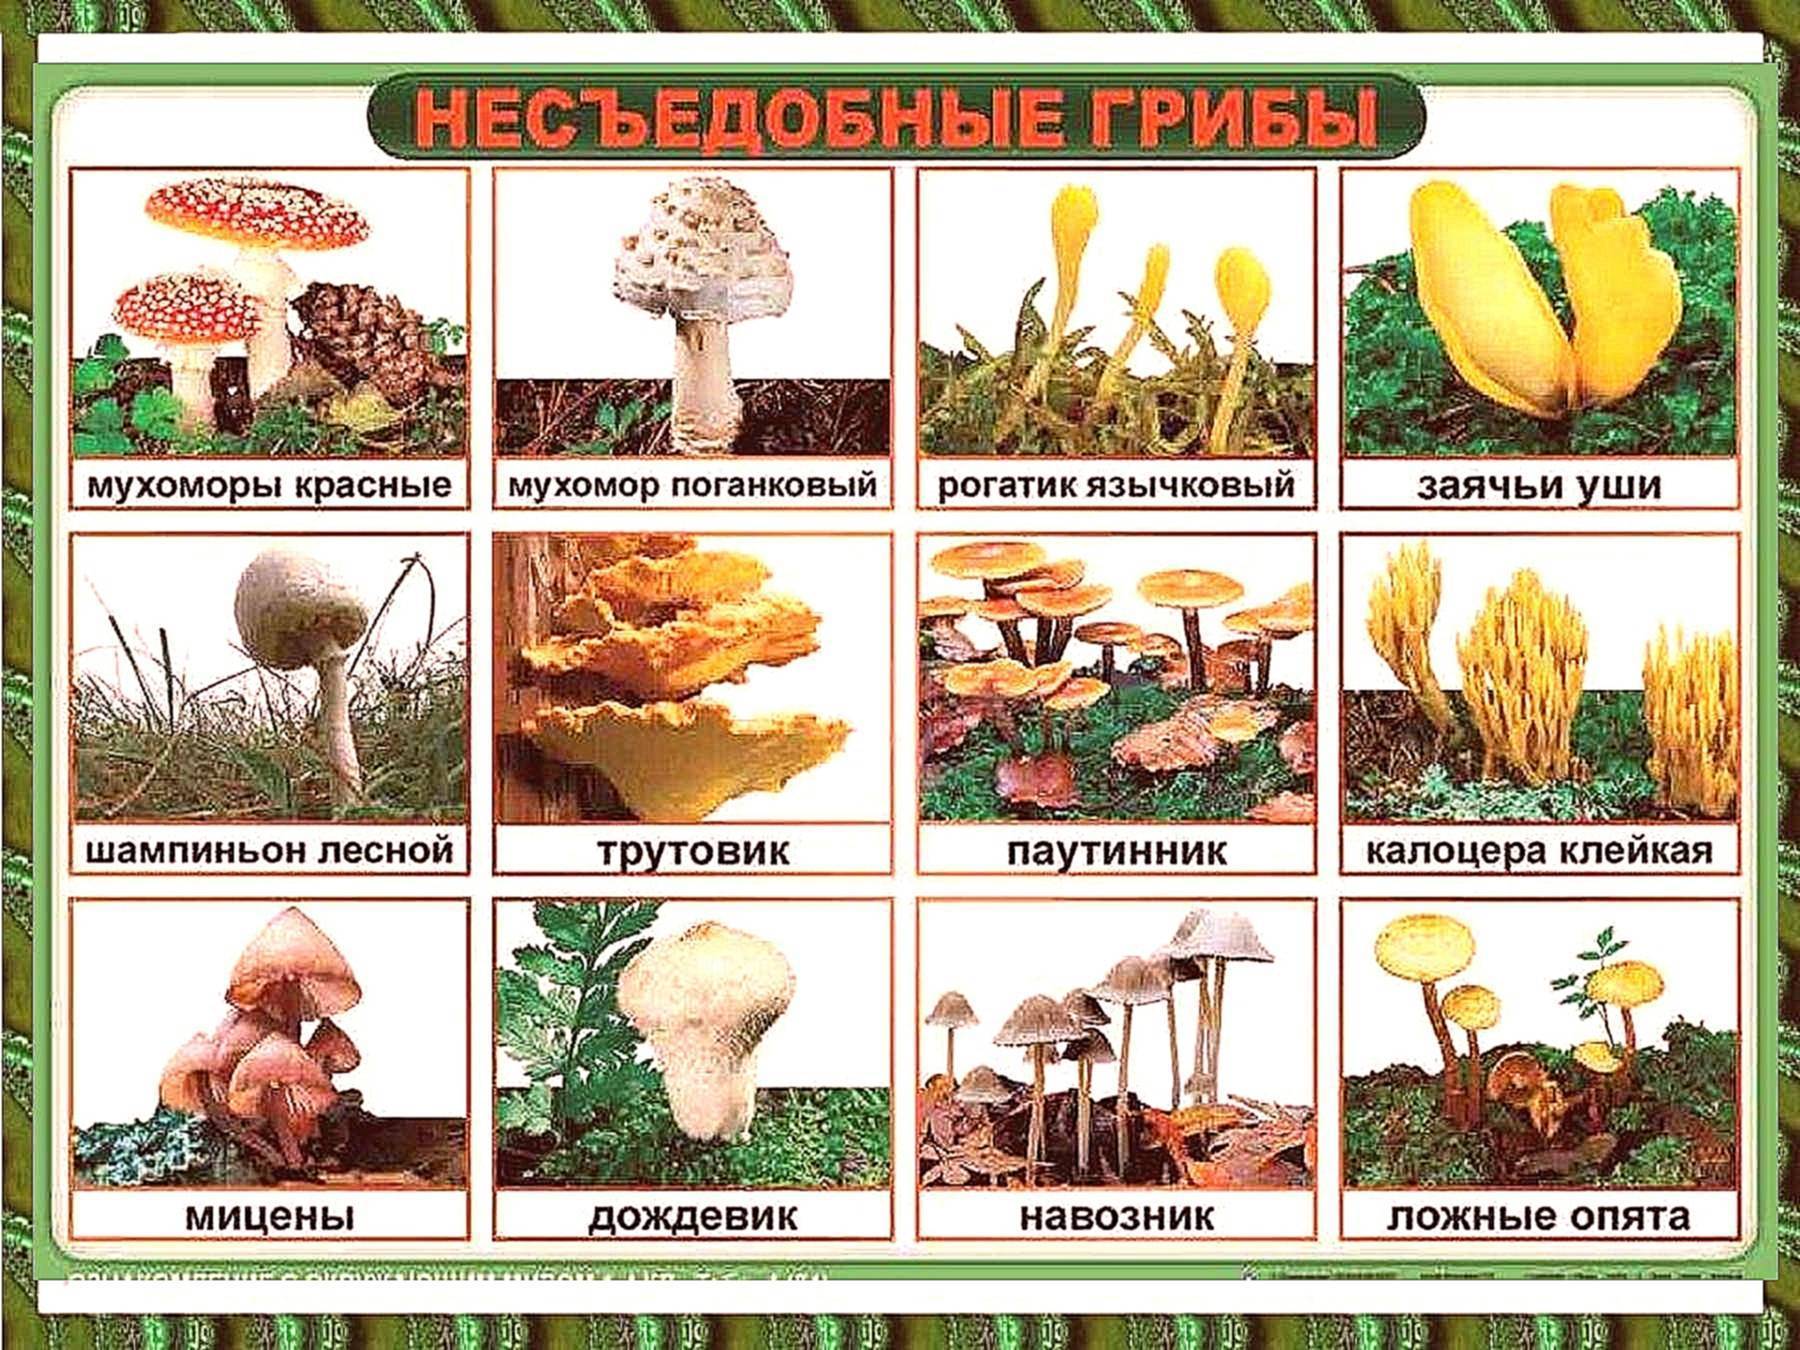 Грибы в ростовской области 2021: съедобные, условные, несъедобные и ядовитые подвиды, грибные места, фото карта